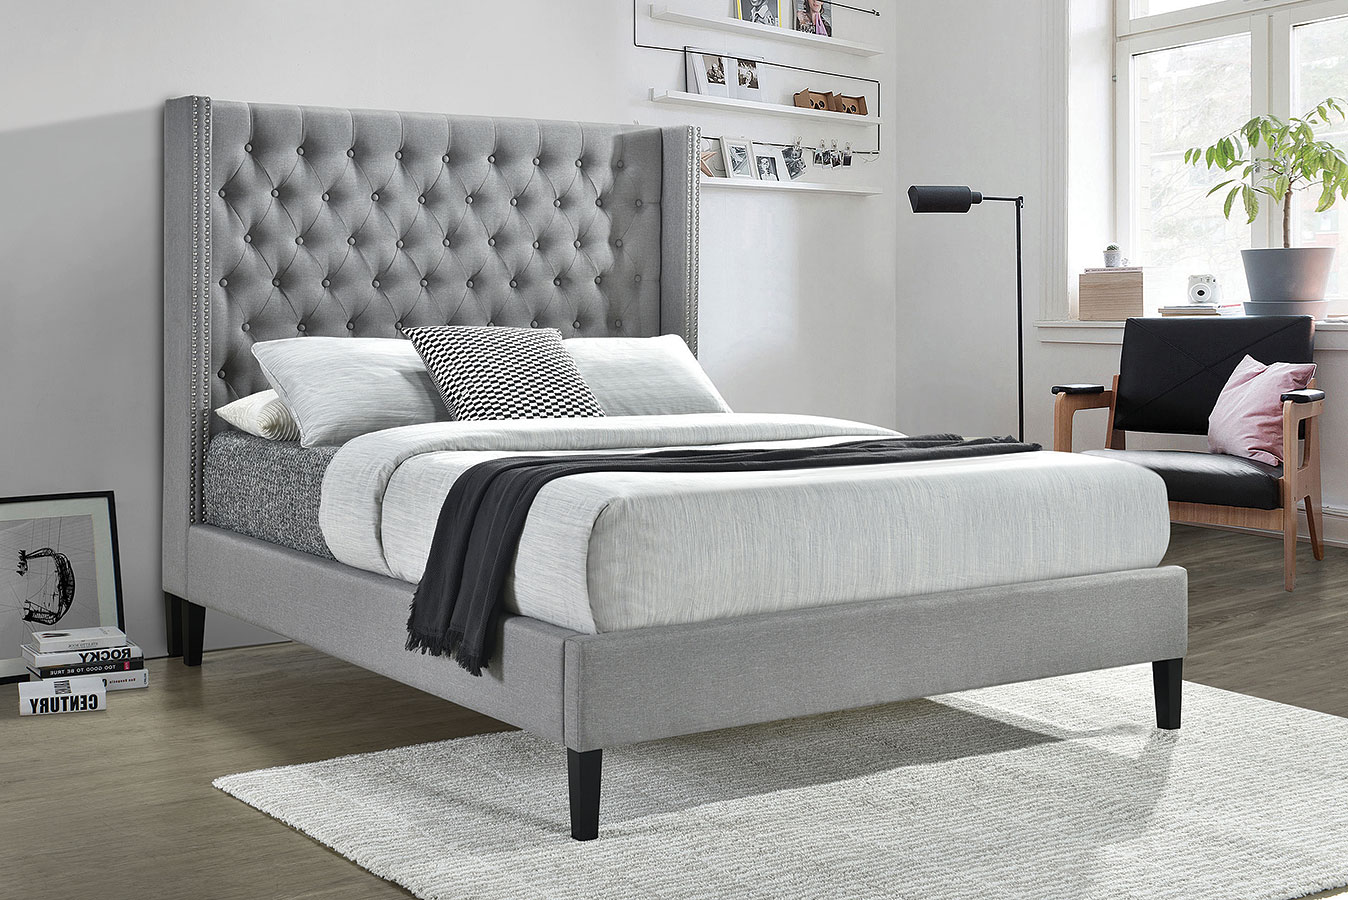 Summerset Light Grey Upholstered Bed By Coaster Furniture Furniturepick